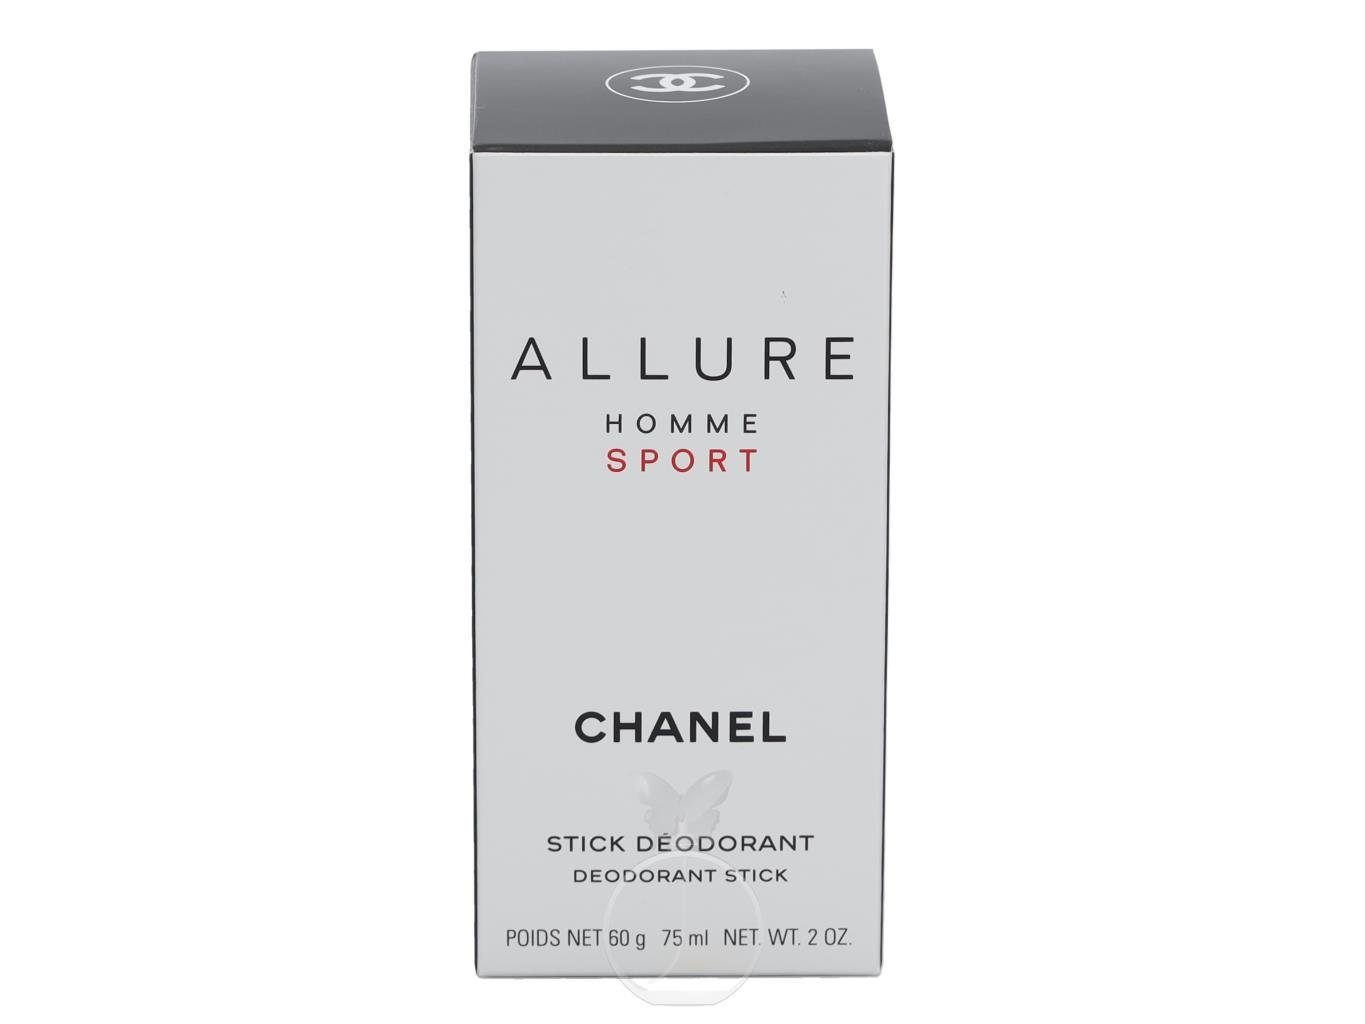 75 CHANEL ml Körperpflegeduft Homme Sport Chanel Allure Deostick